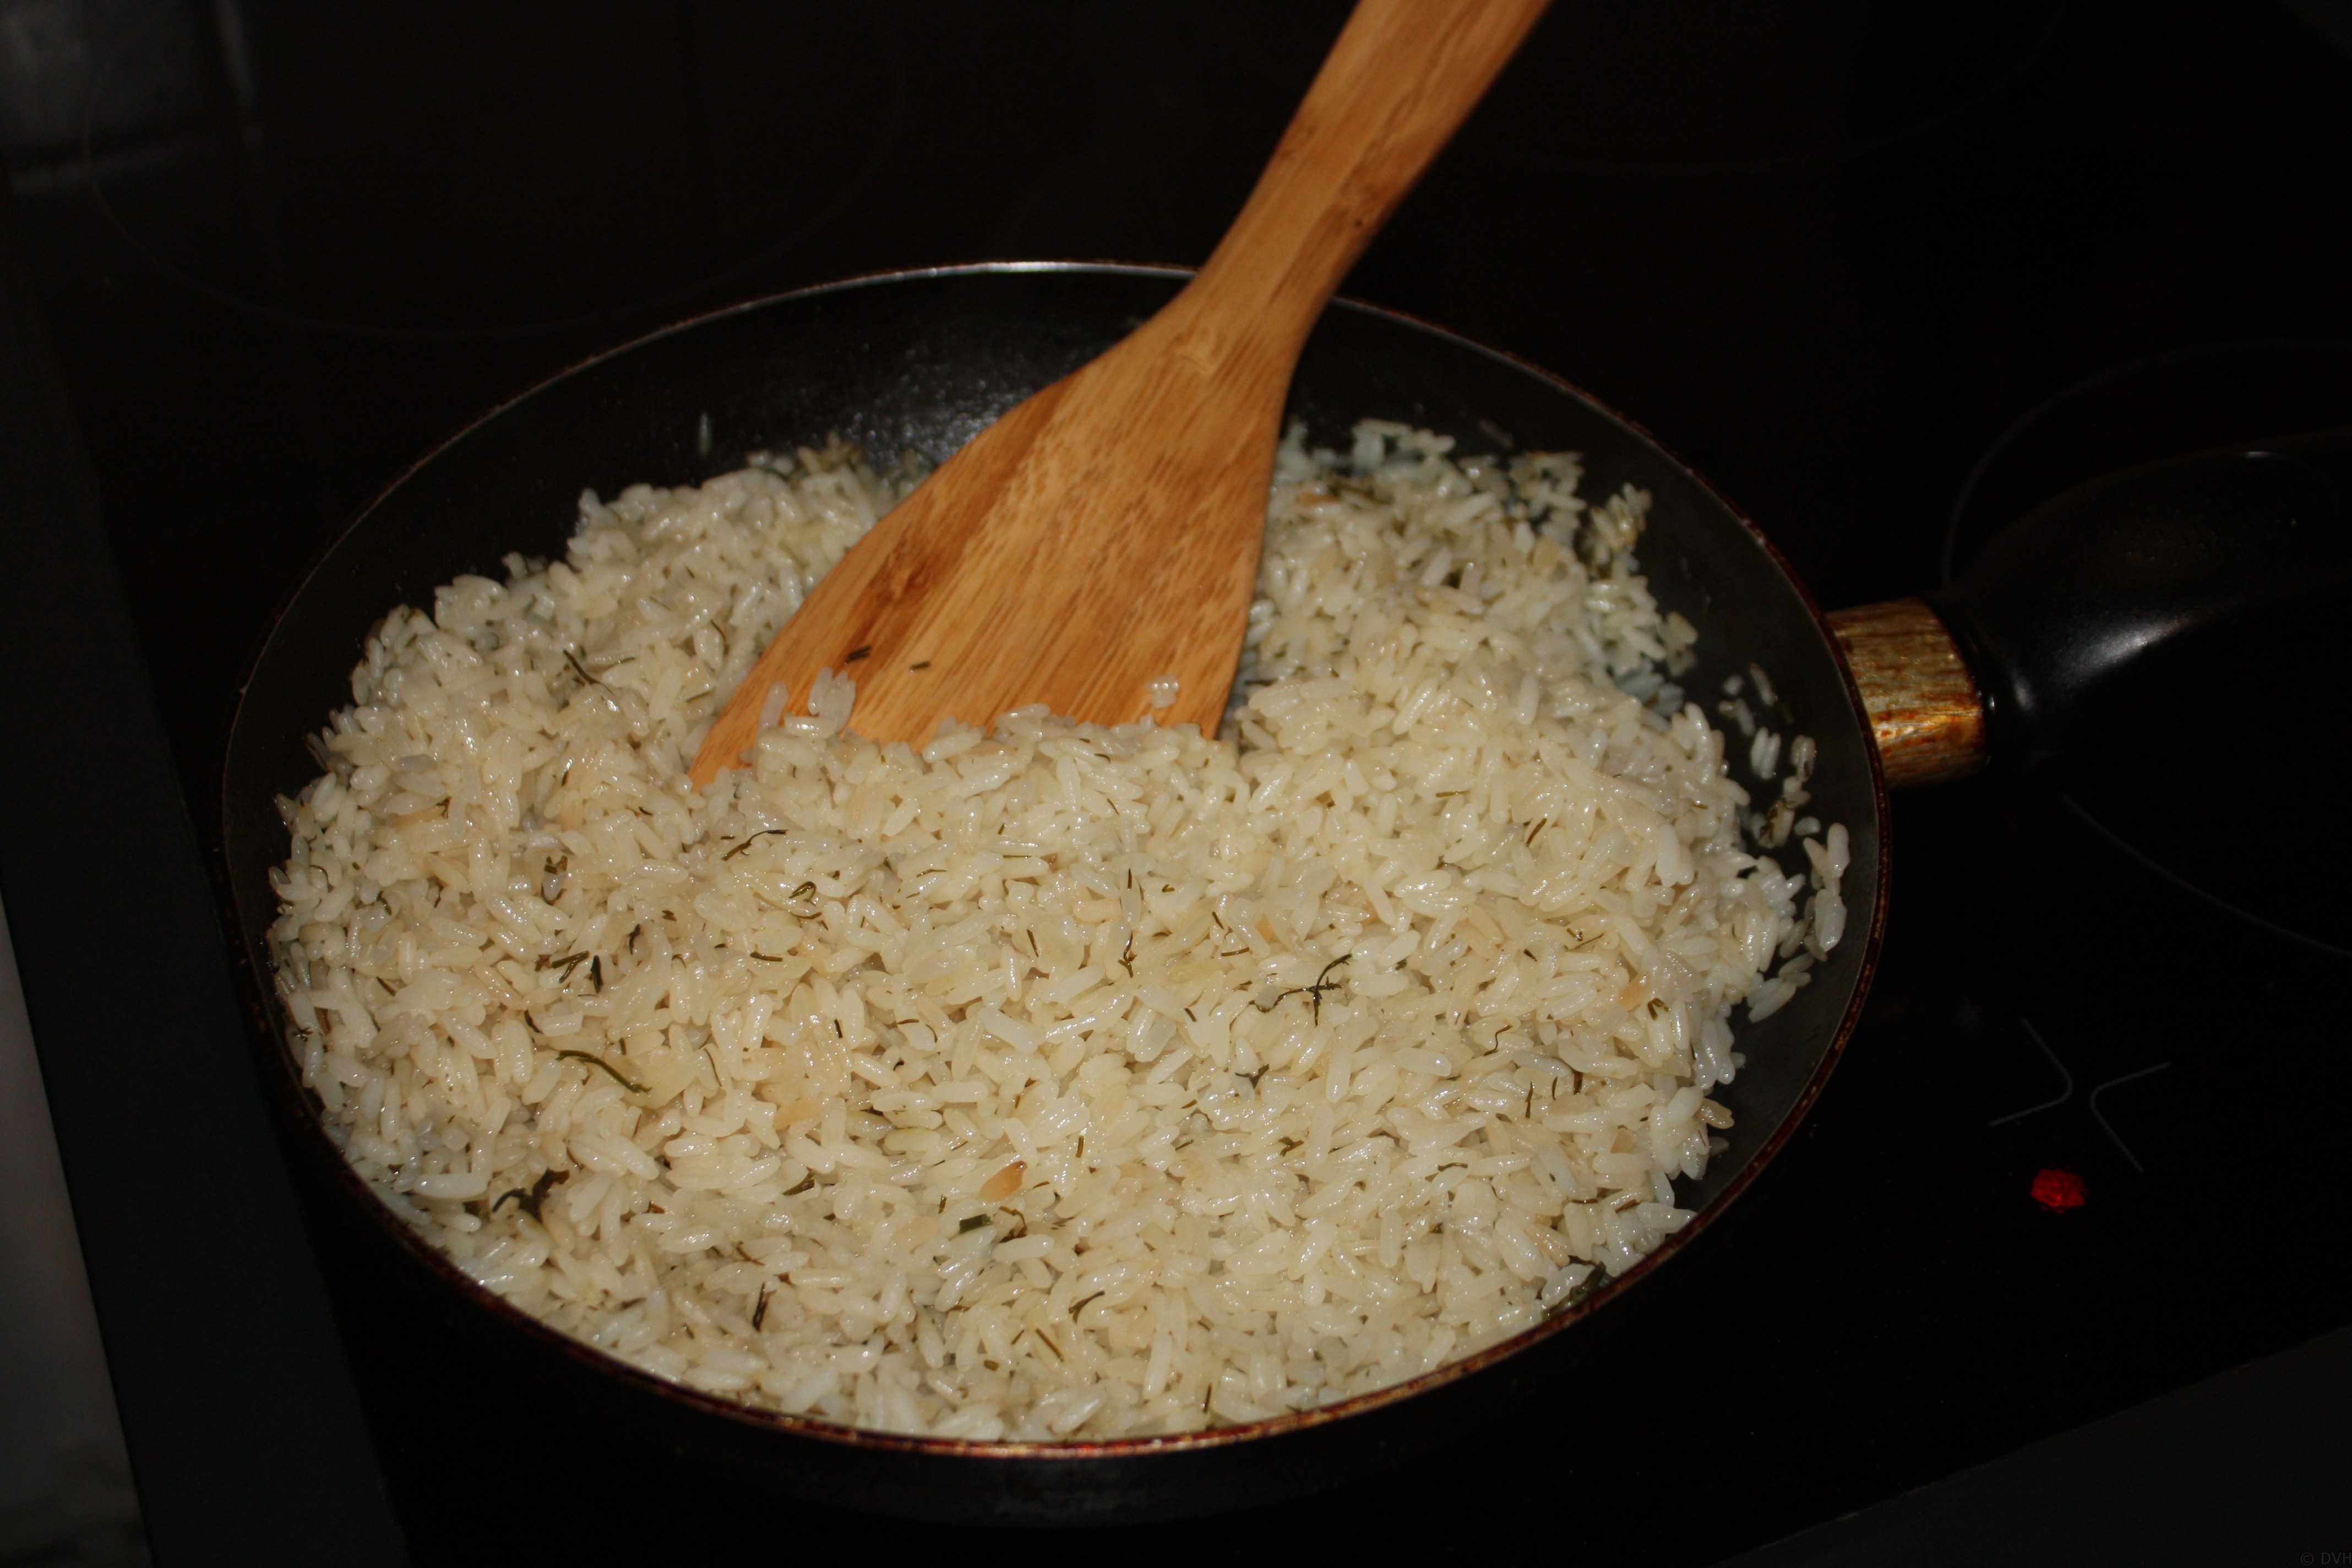 Плов 2 стакана риса. Рис басмати вареный. Рис басмати приготовленный. Пропорции риса басмати и воды. Пропорции риса басмати и воды для плова.